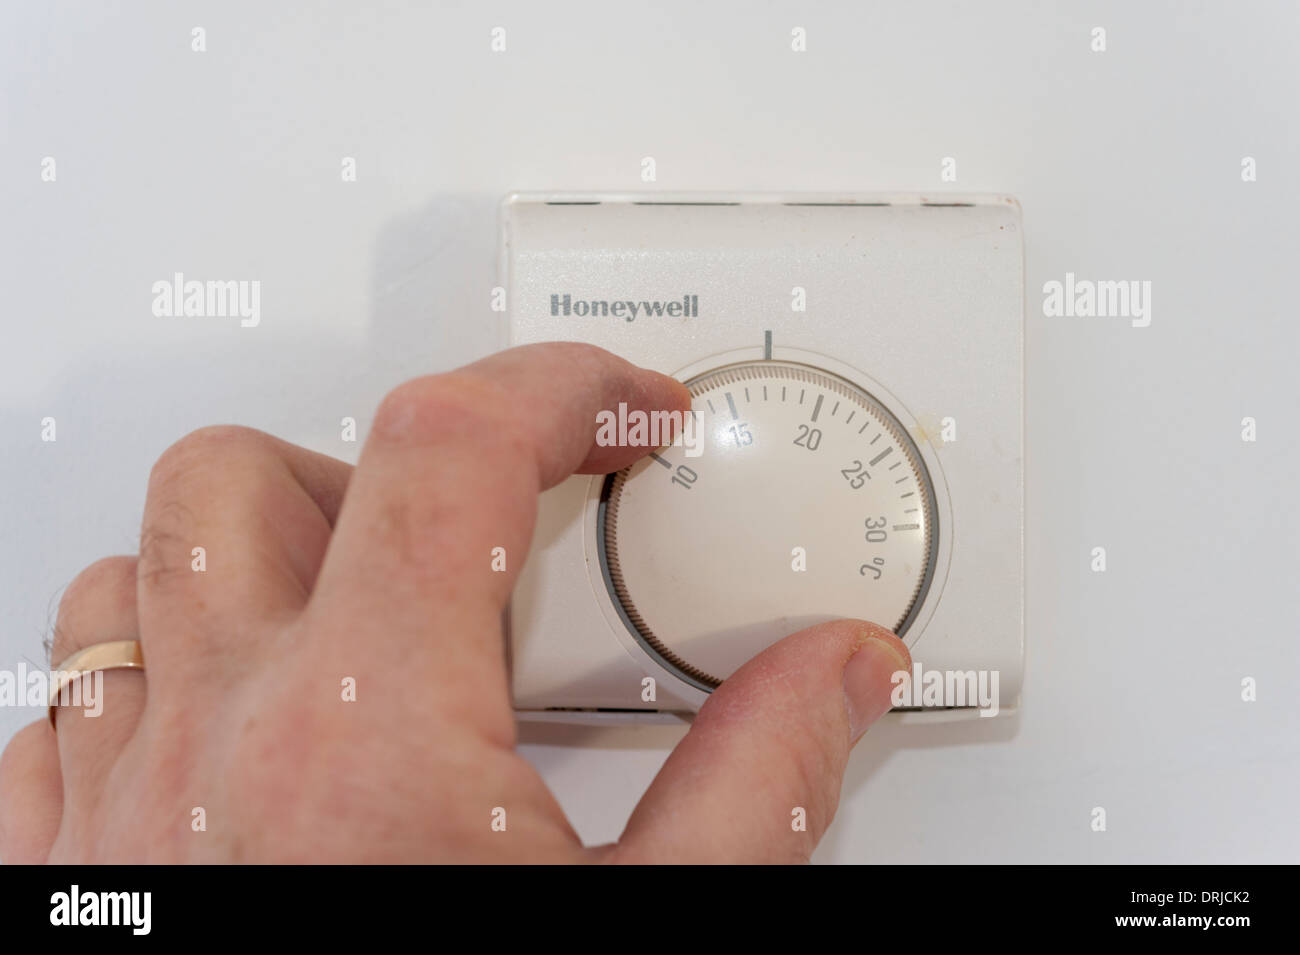 Gros plan d'une part le fait de baisser ou de régler la température sur un thermostat de chauffage domestique Banque D'Images